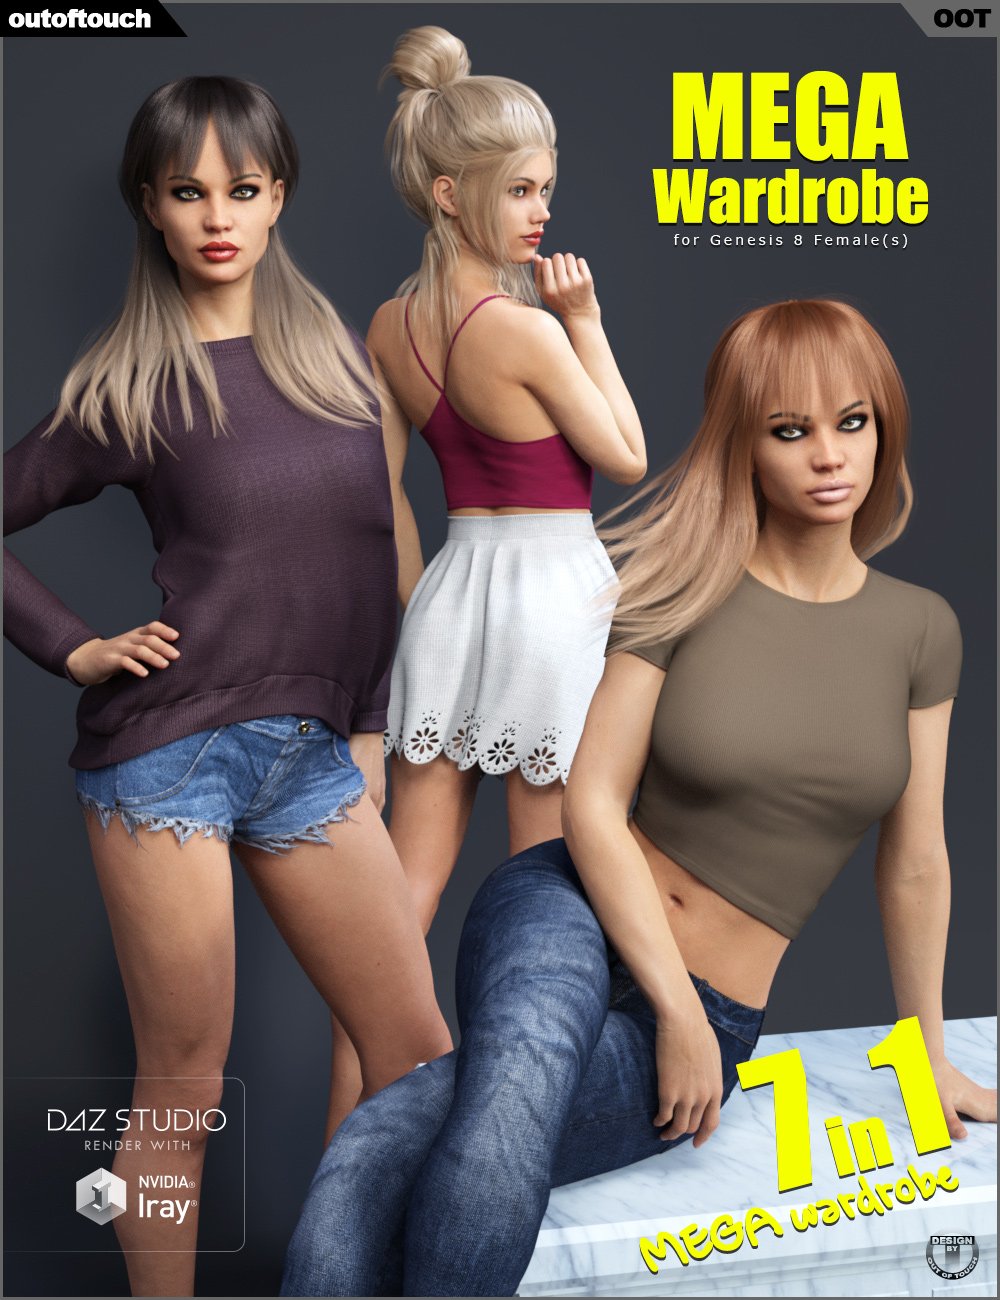 Genesis 8 Female MEGA Wardrobe by: outoftouch, 3D Models by Daz 3D